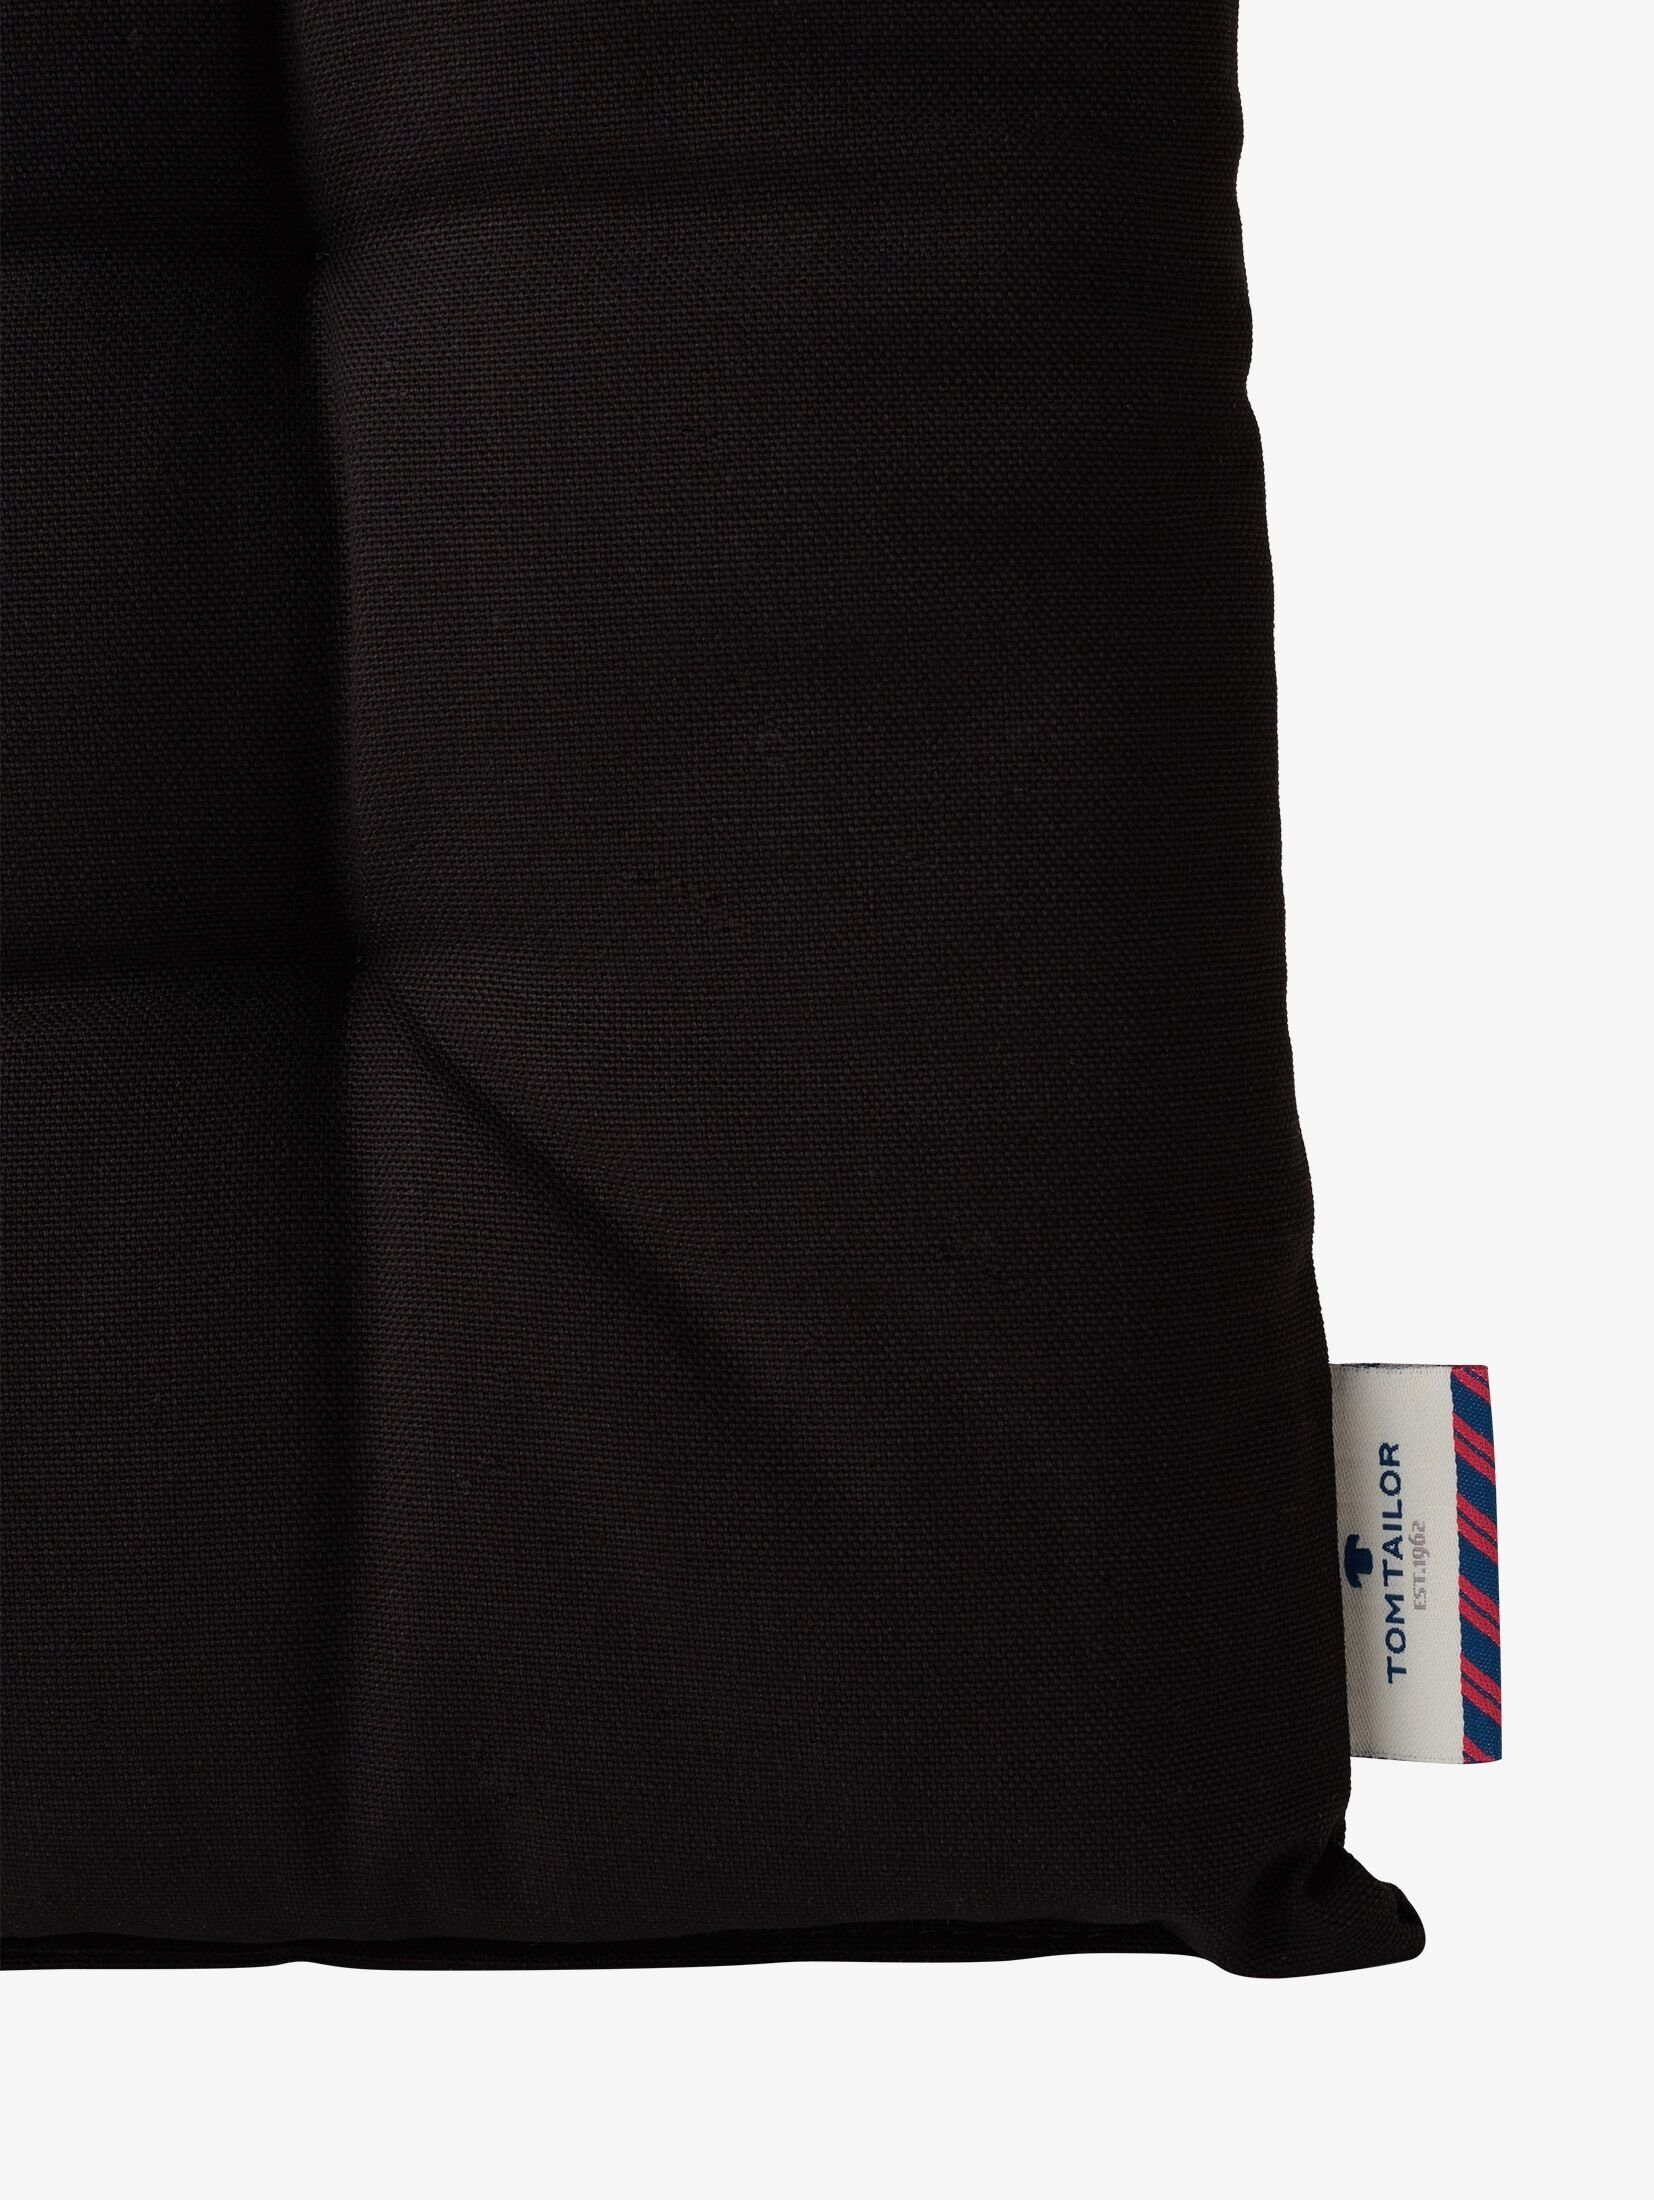 TOM Kissenbezug im schwarz Unifarbenes Sitzkissen TAILOR Pack, 2er